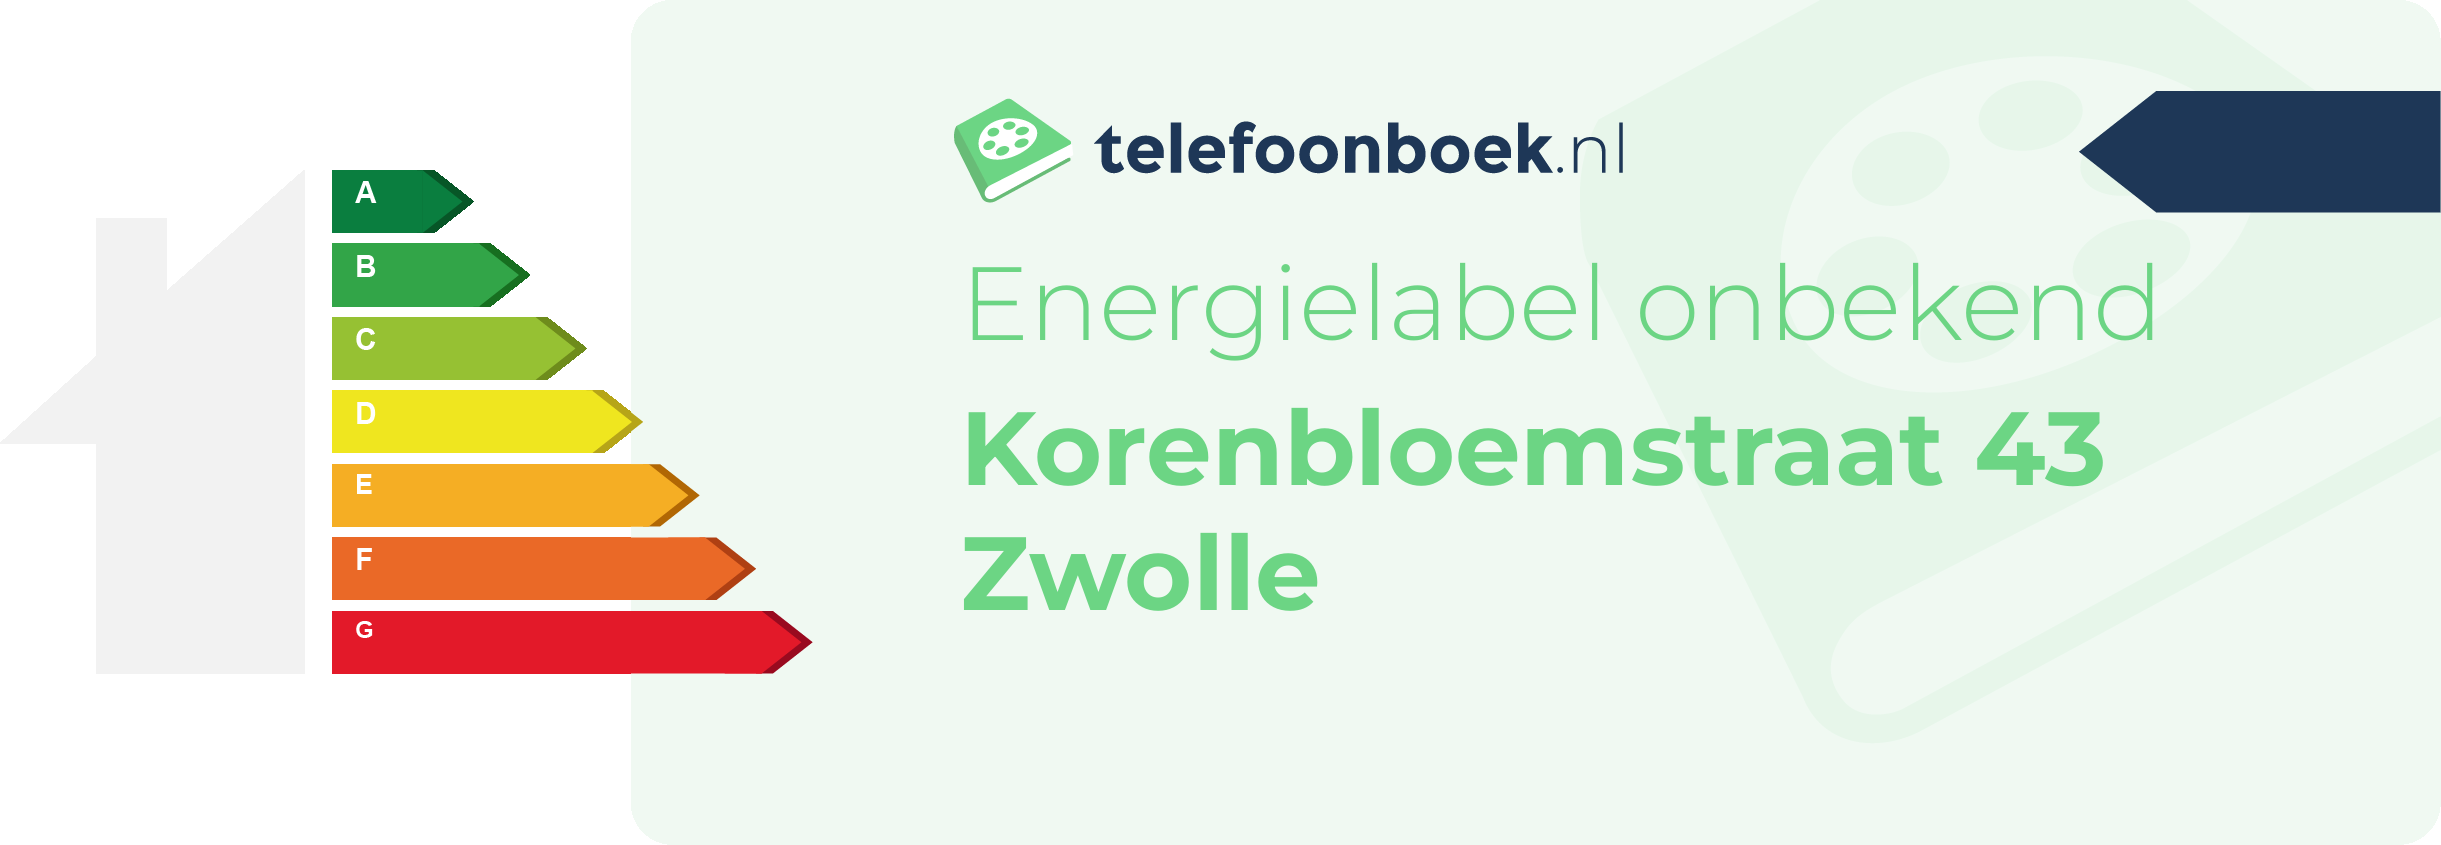 Energielabel Korenbloemstraat 43 Zwolle